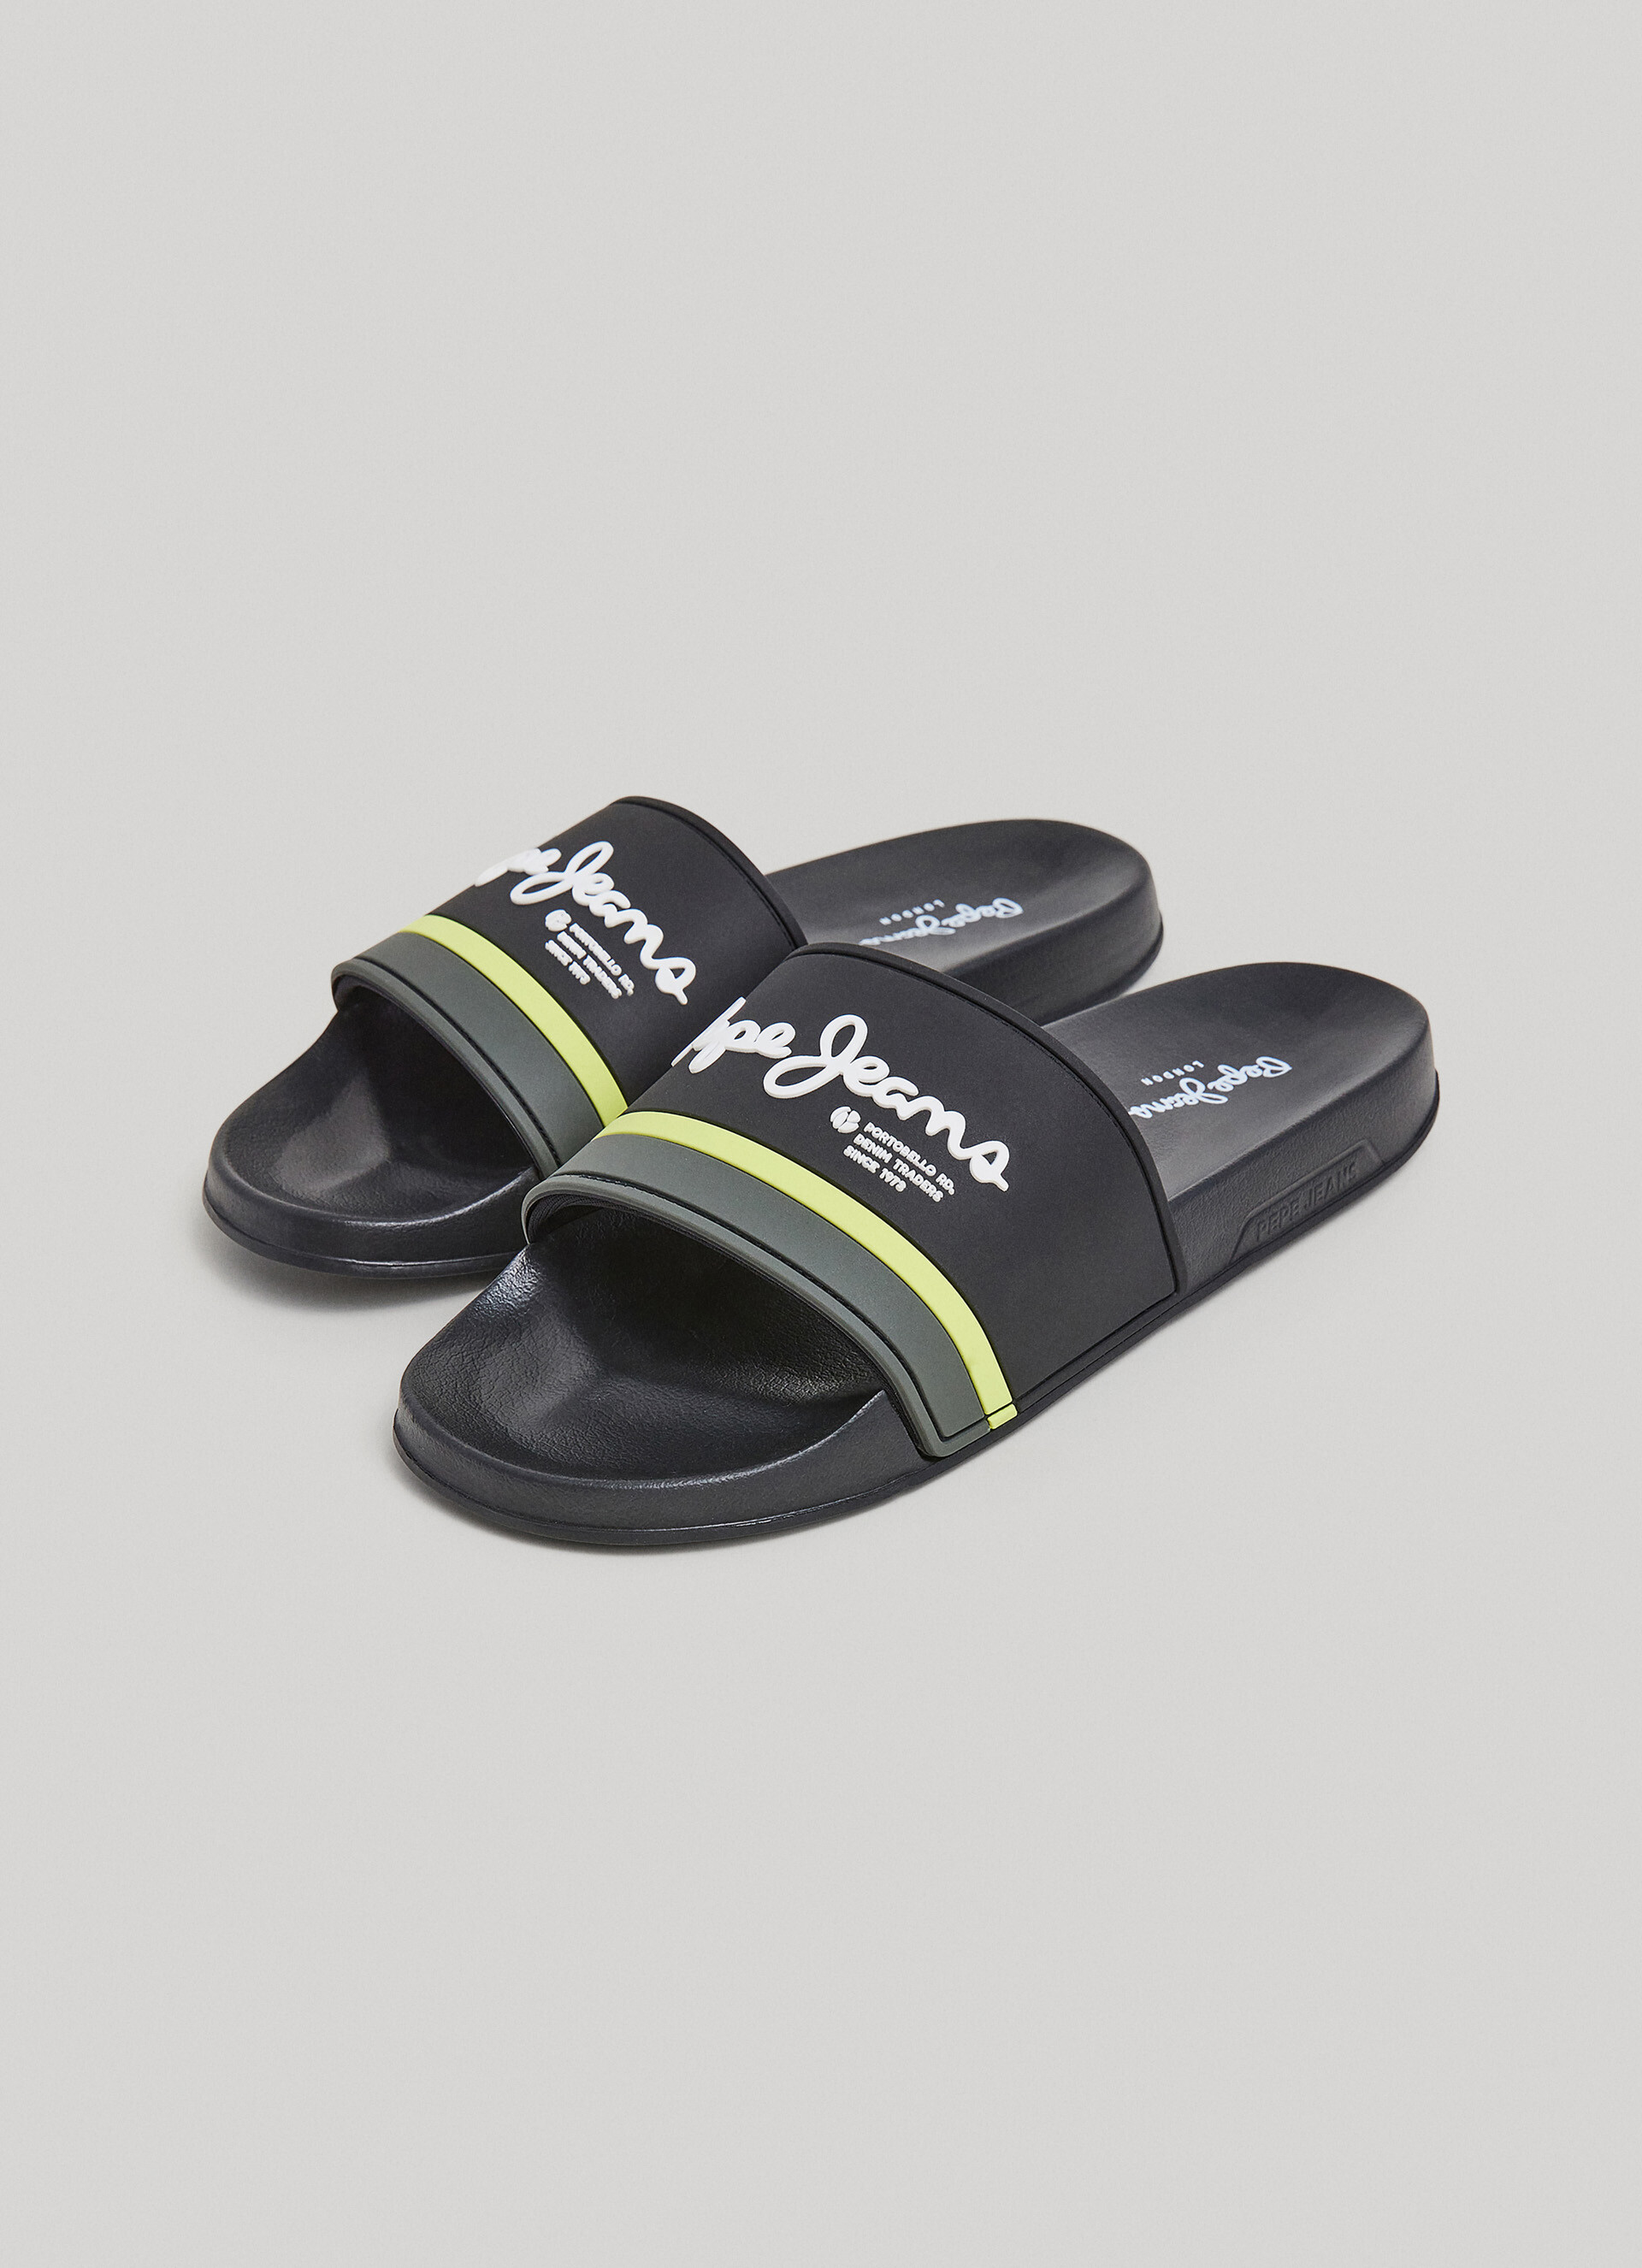 Slider Portobello Beach Flip Flops | Pepe Jeans